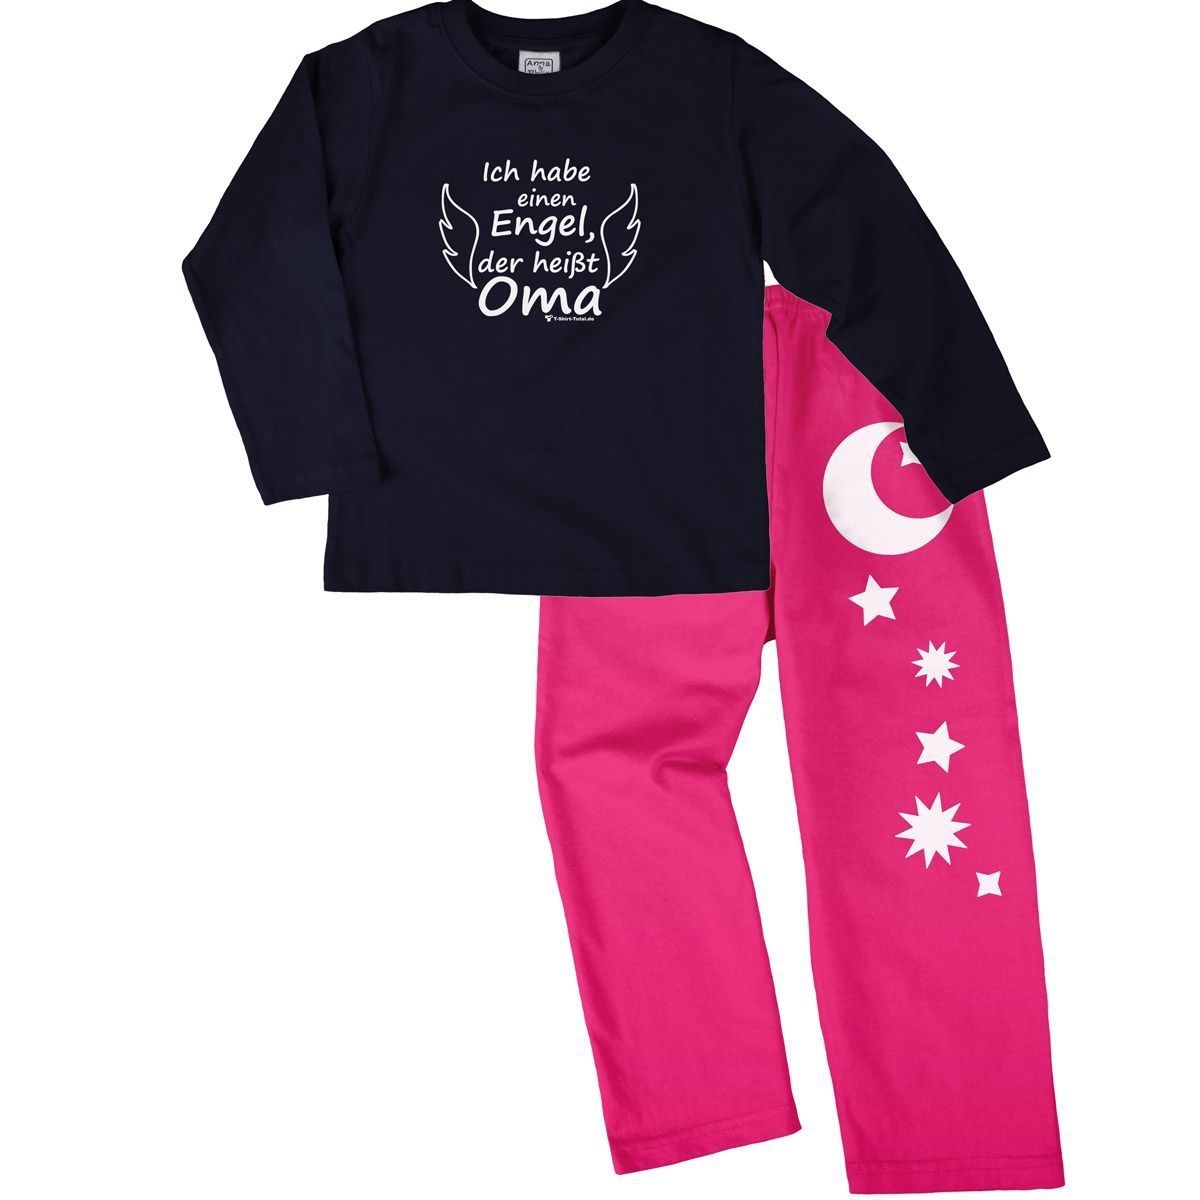 Engel Oma Pyjama Set navy / pink 122 / 128